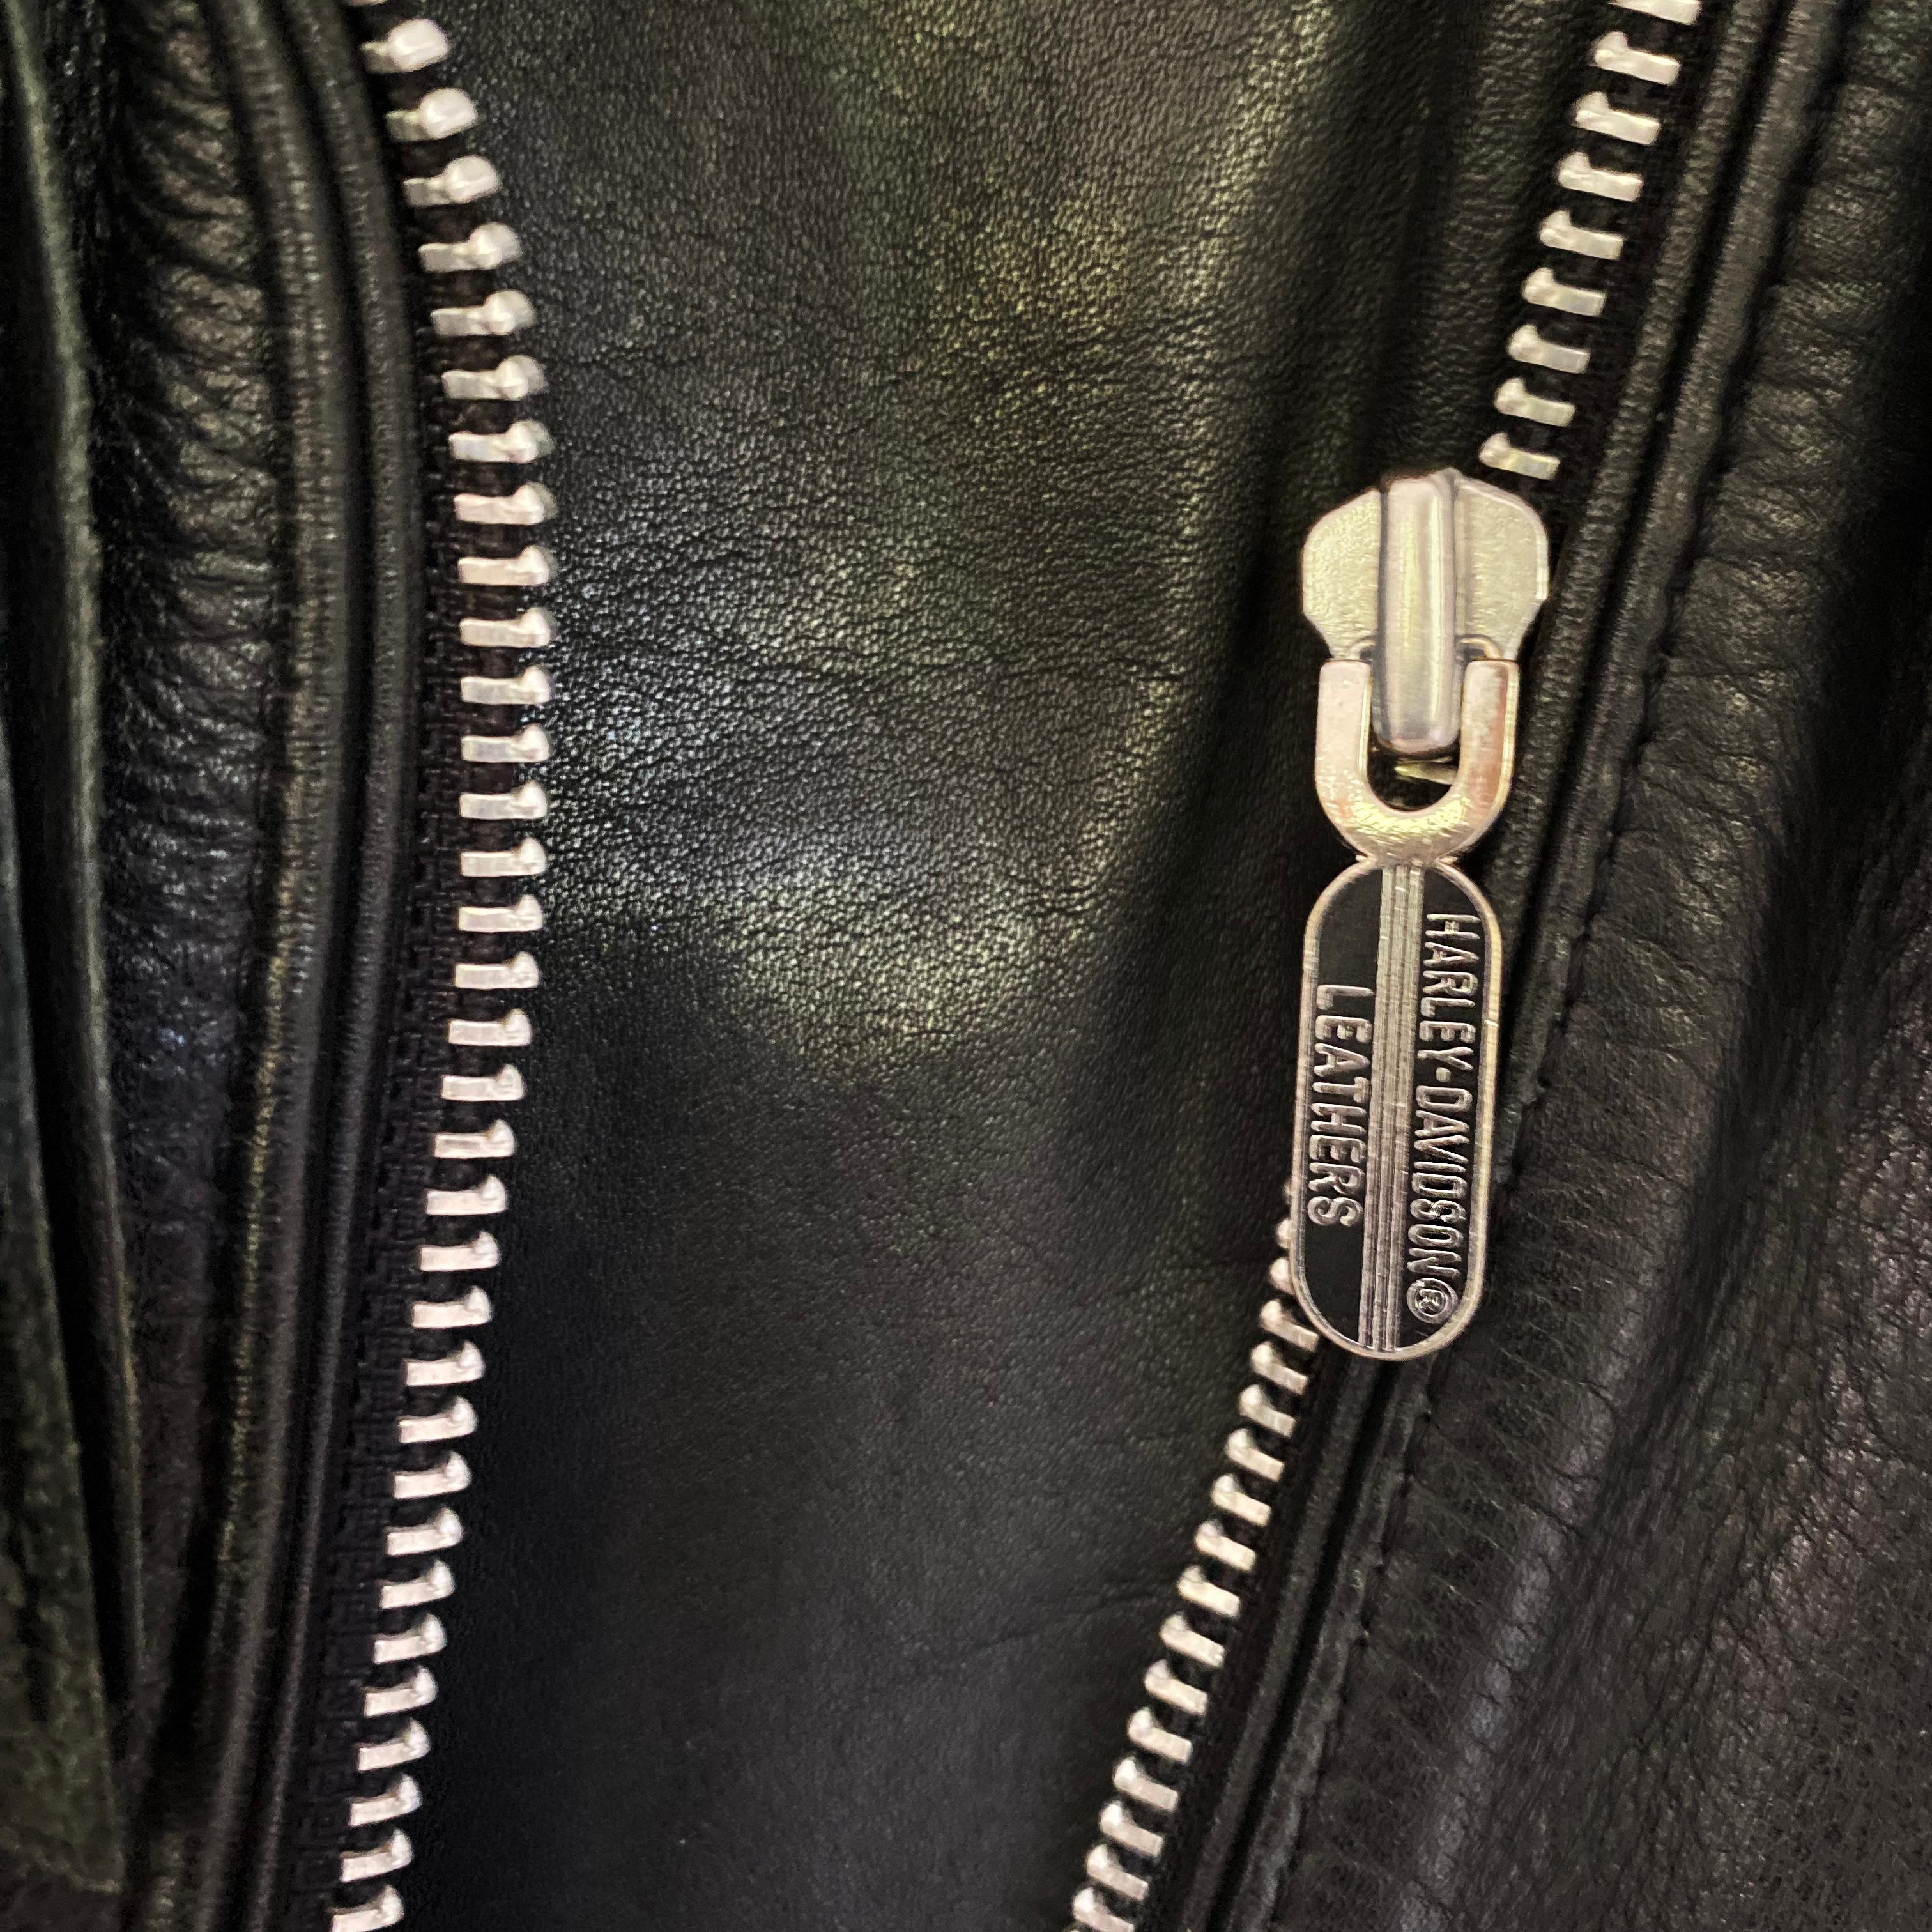 harley davidson womens leather jacket with fringe